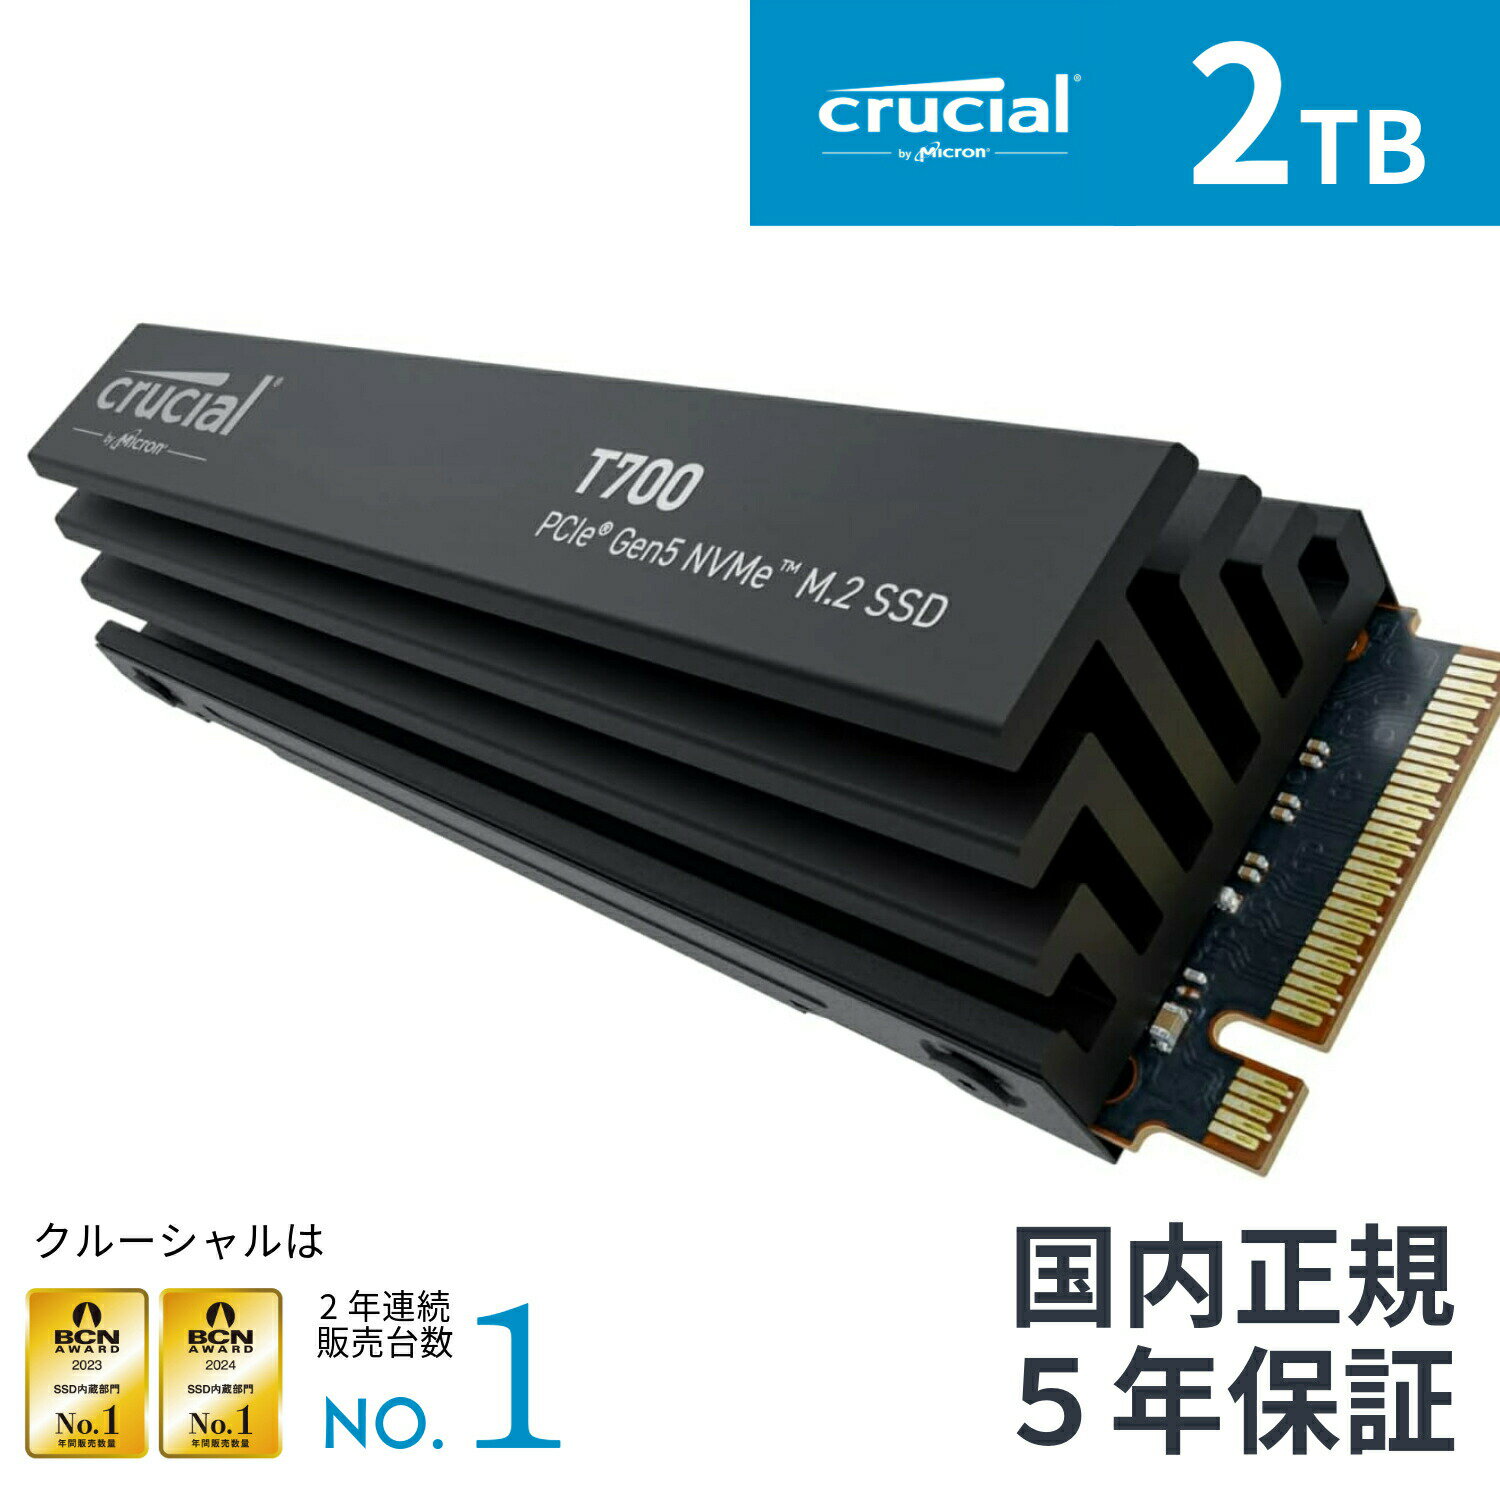 【国内正規流通品】Crucial クルーシャルT700 2TB 3D NAND NVMe PCIe5.0 M.2 SSD ヒートシンクモデル 最大12,400MB/…